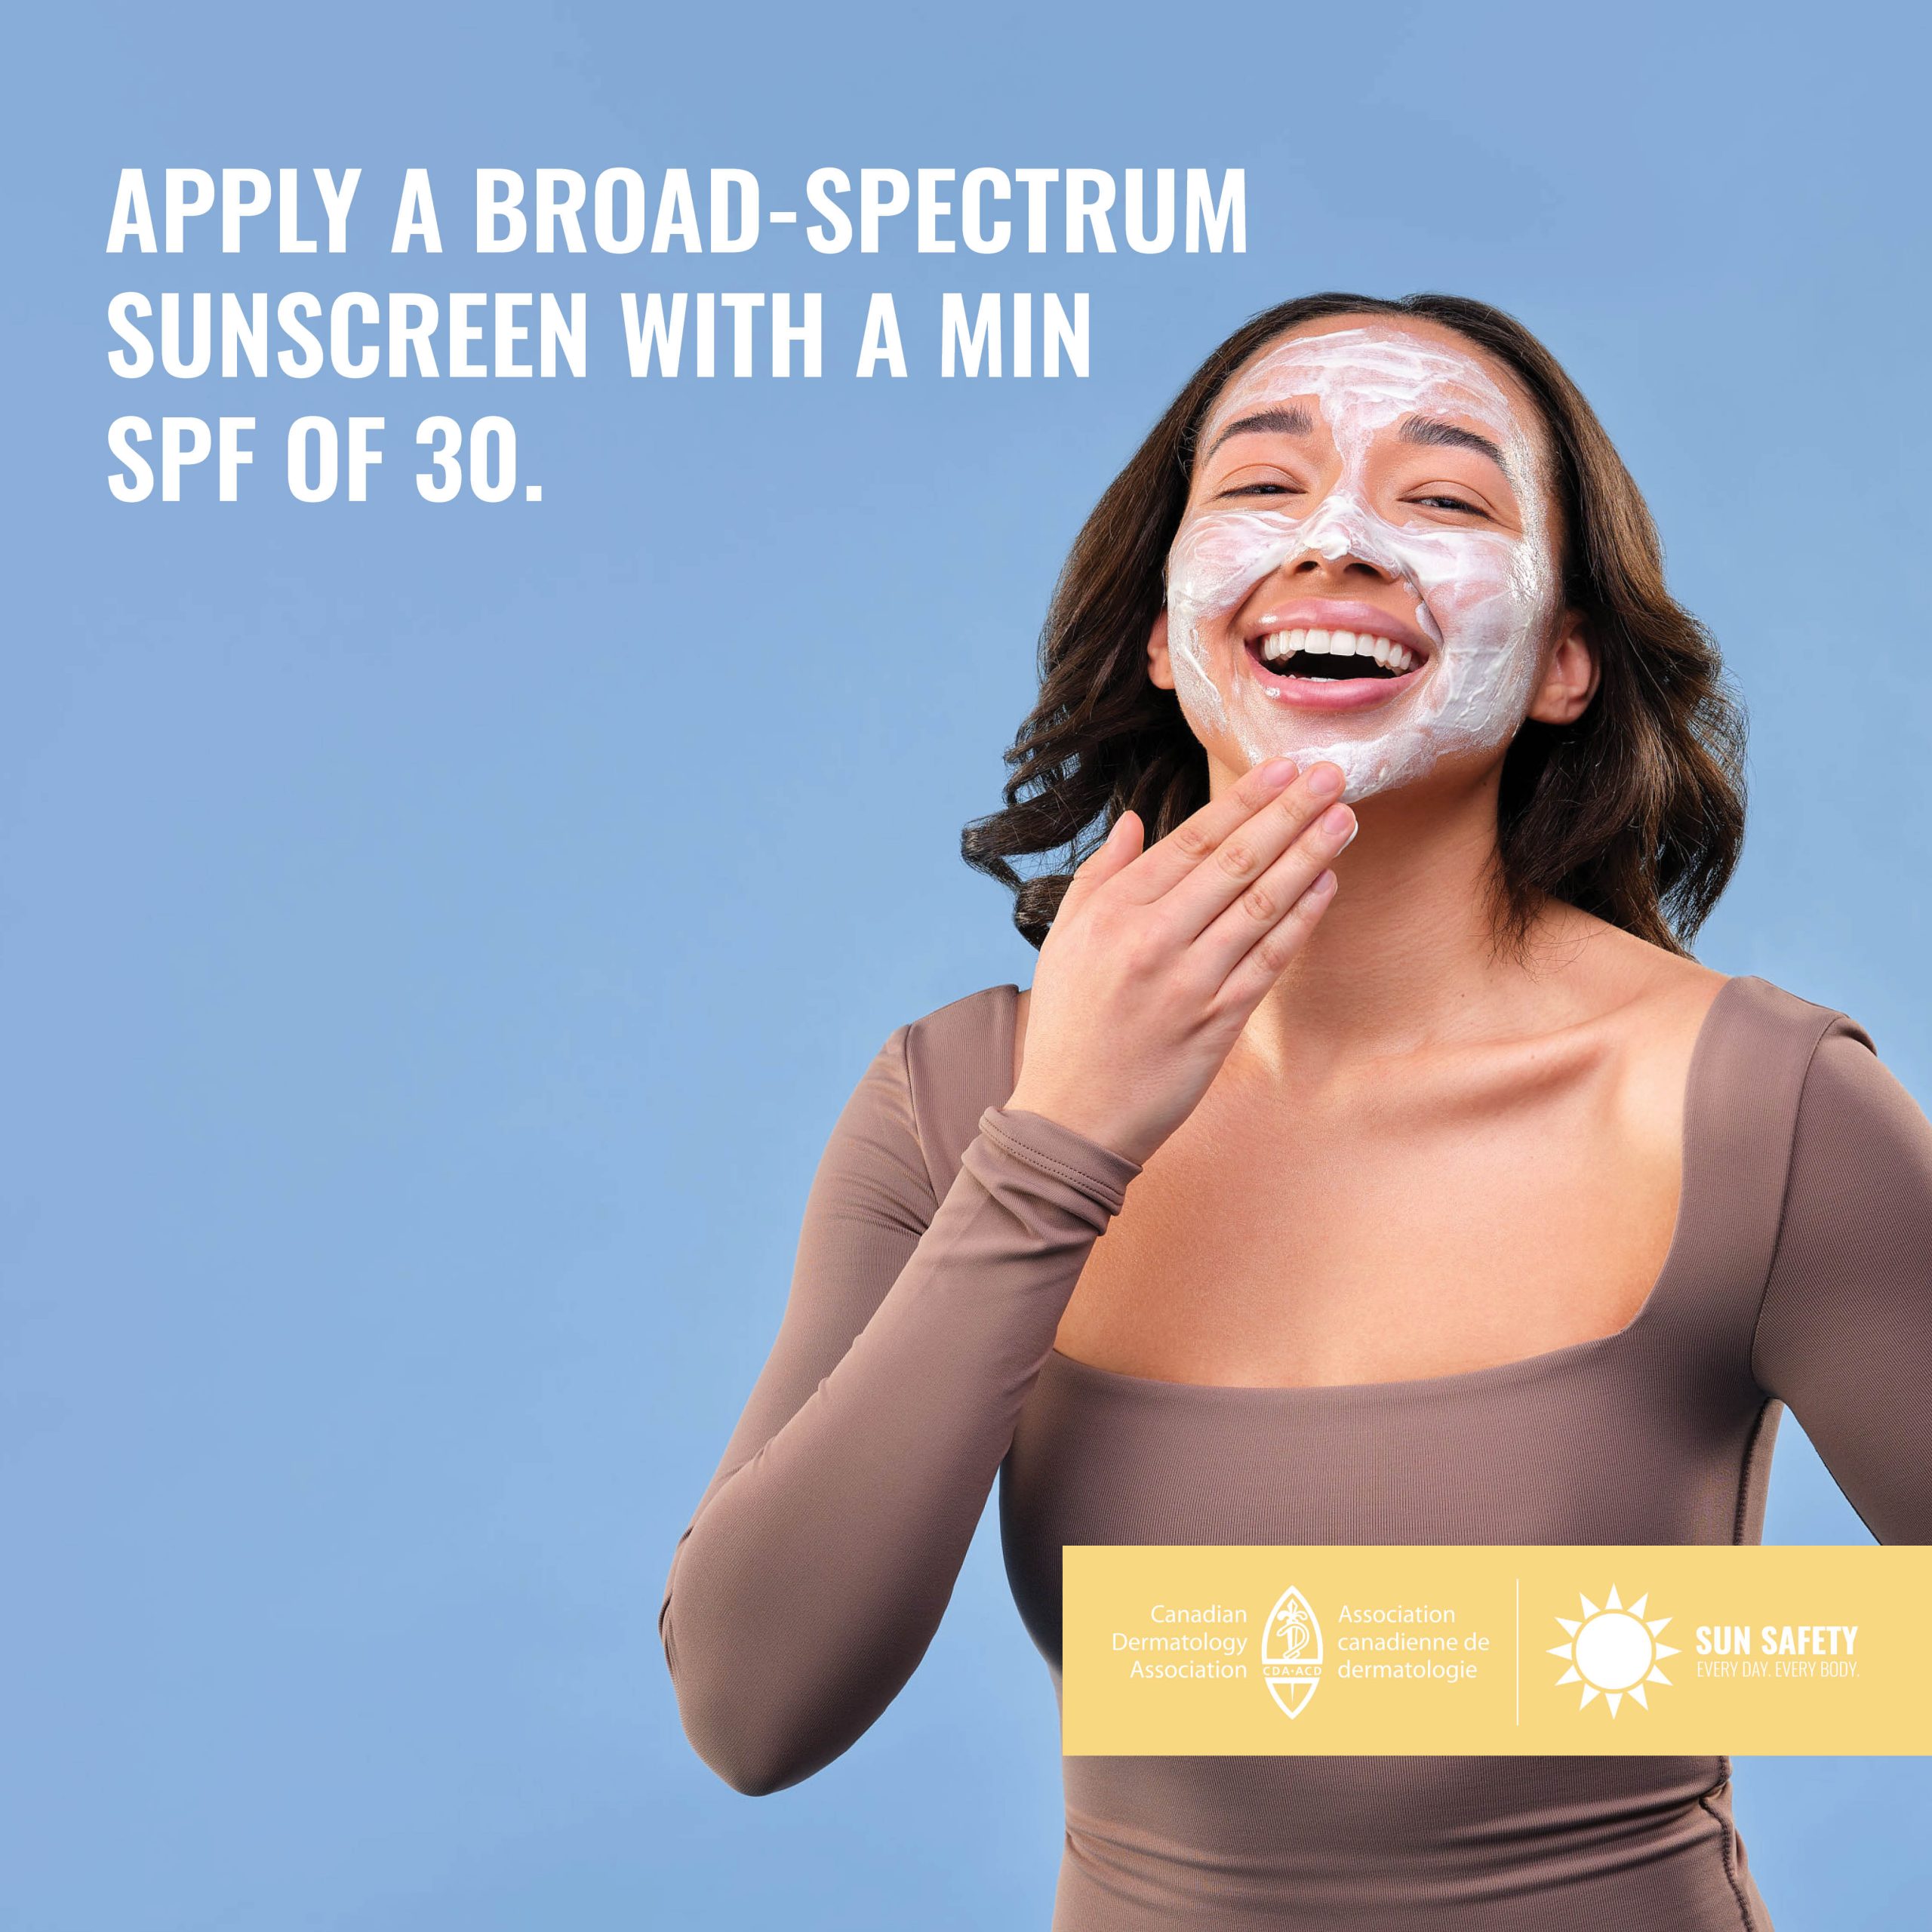 女子在脸上涂防晒霜。使用最小防晒系数为30的广谱防晒霜。